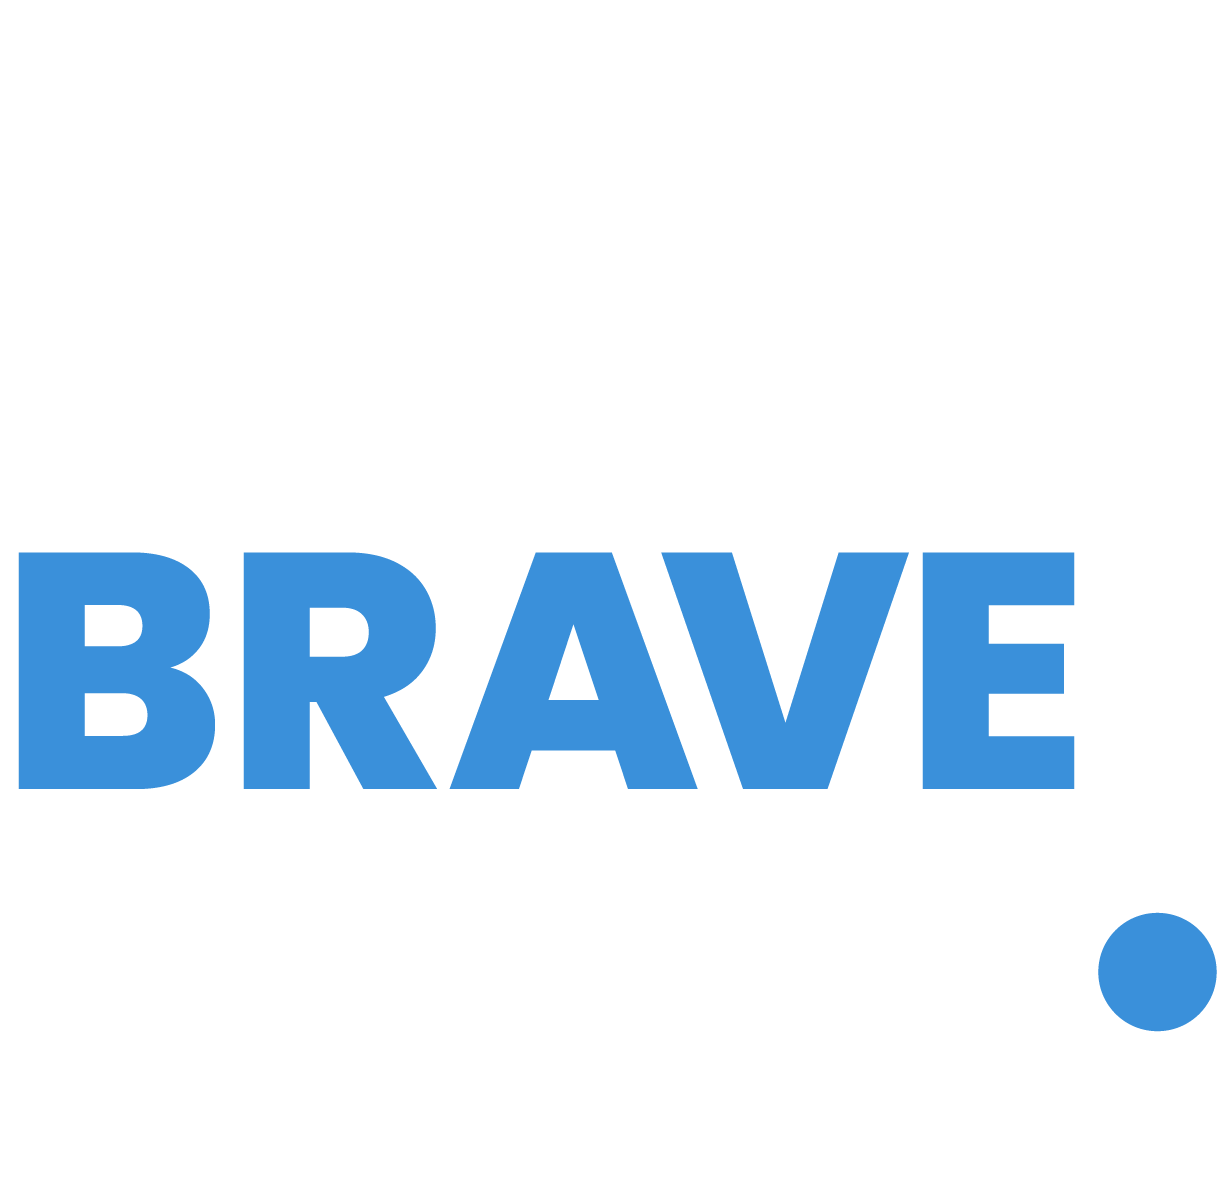 The Brave Venture